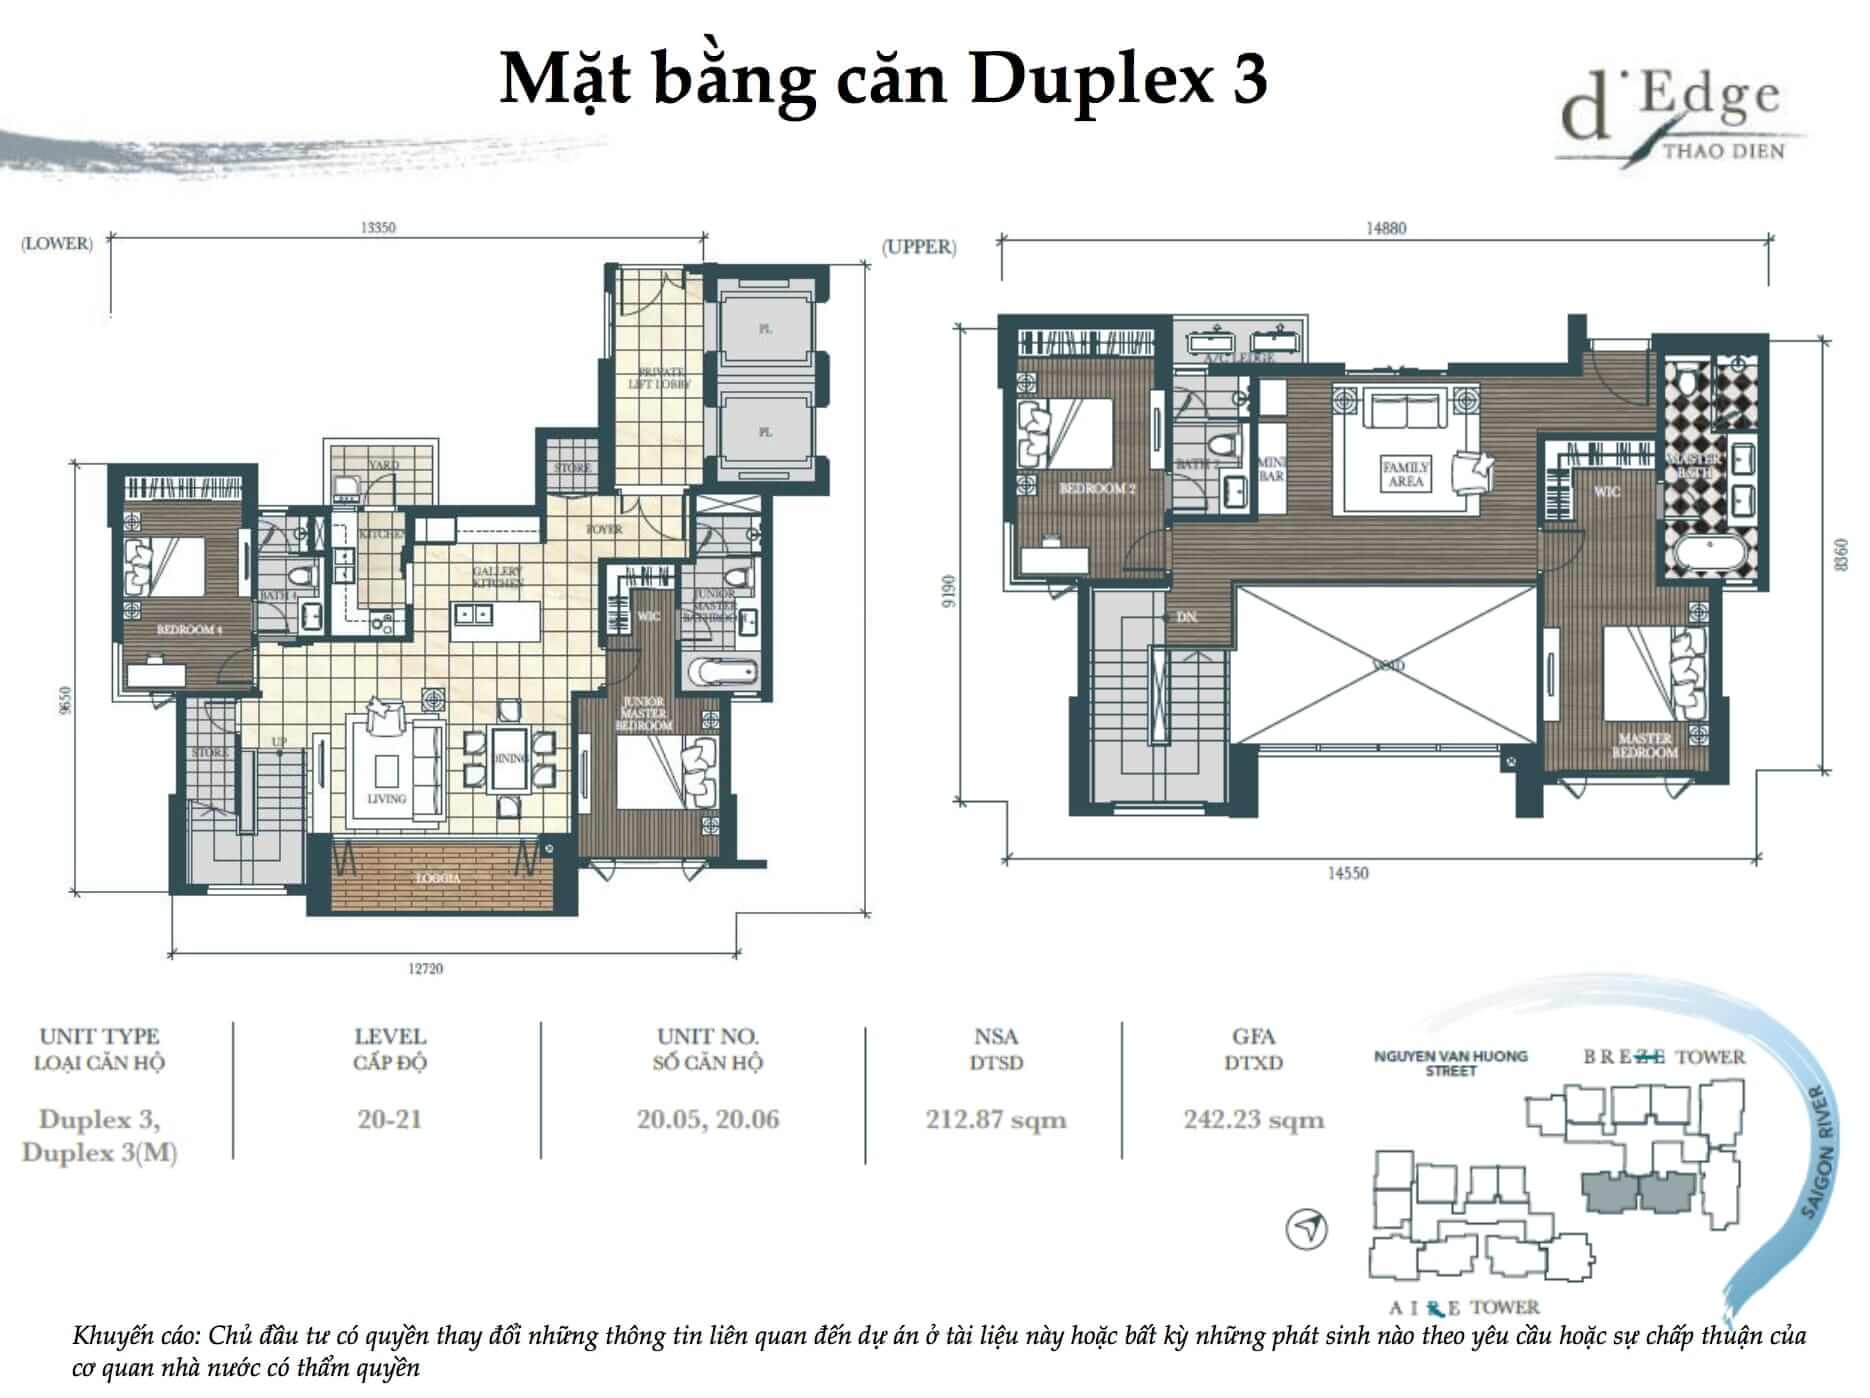 Mặt bằng căn hộ Duplex d'Edge Thao Dien quận 2